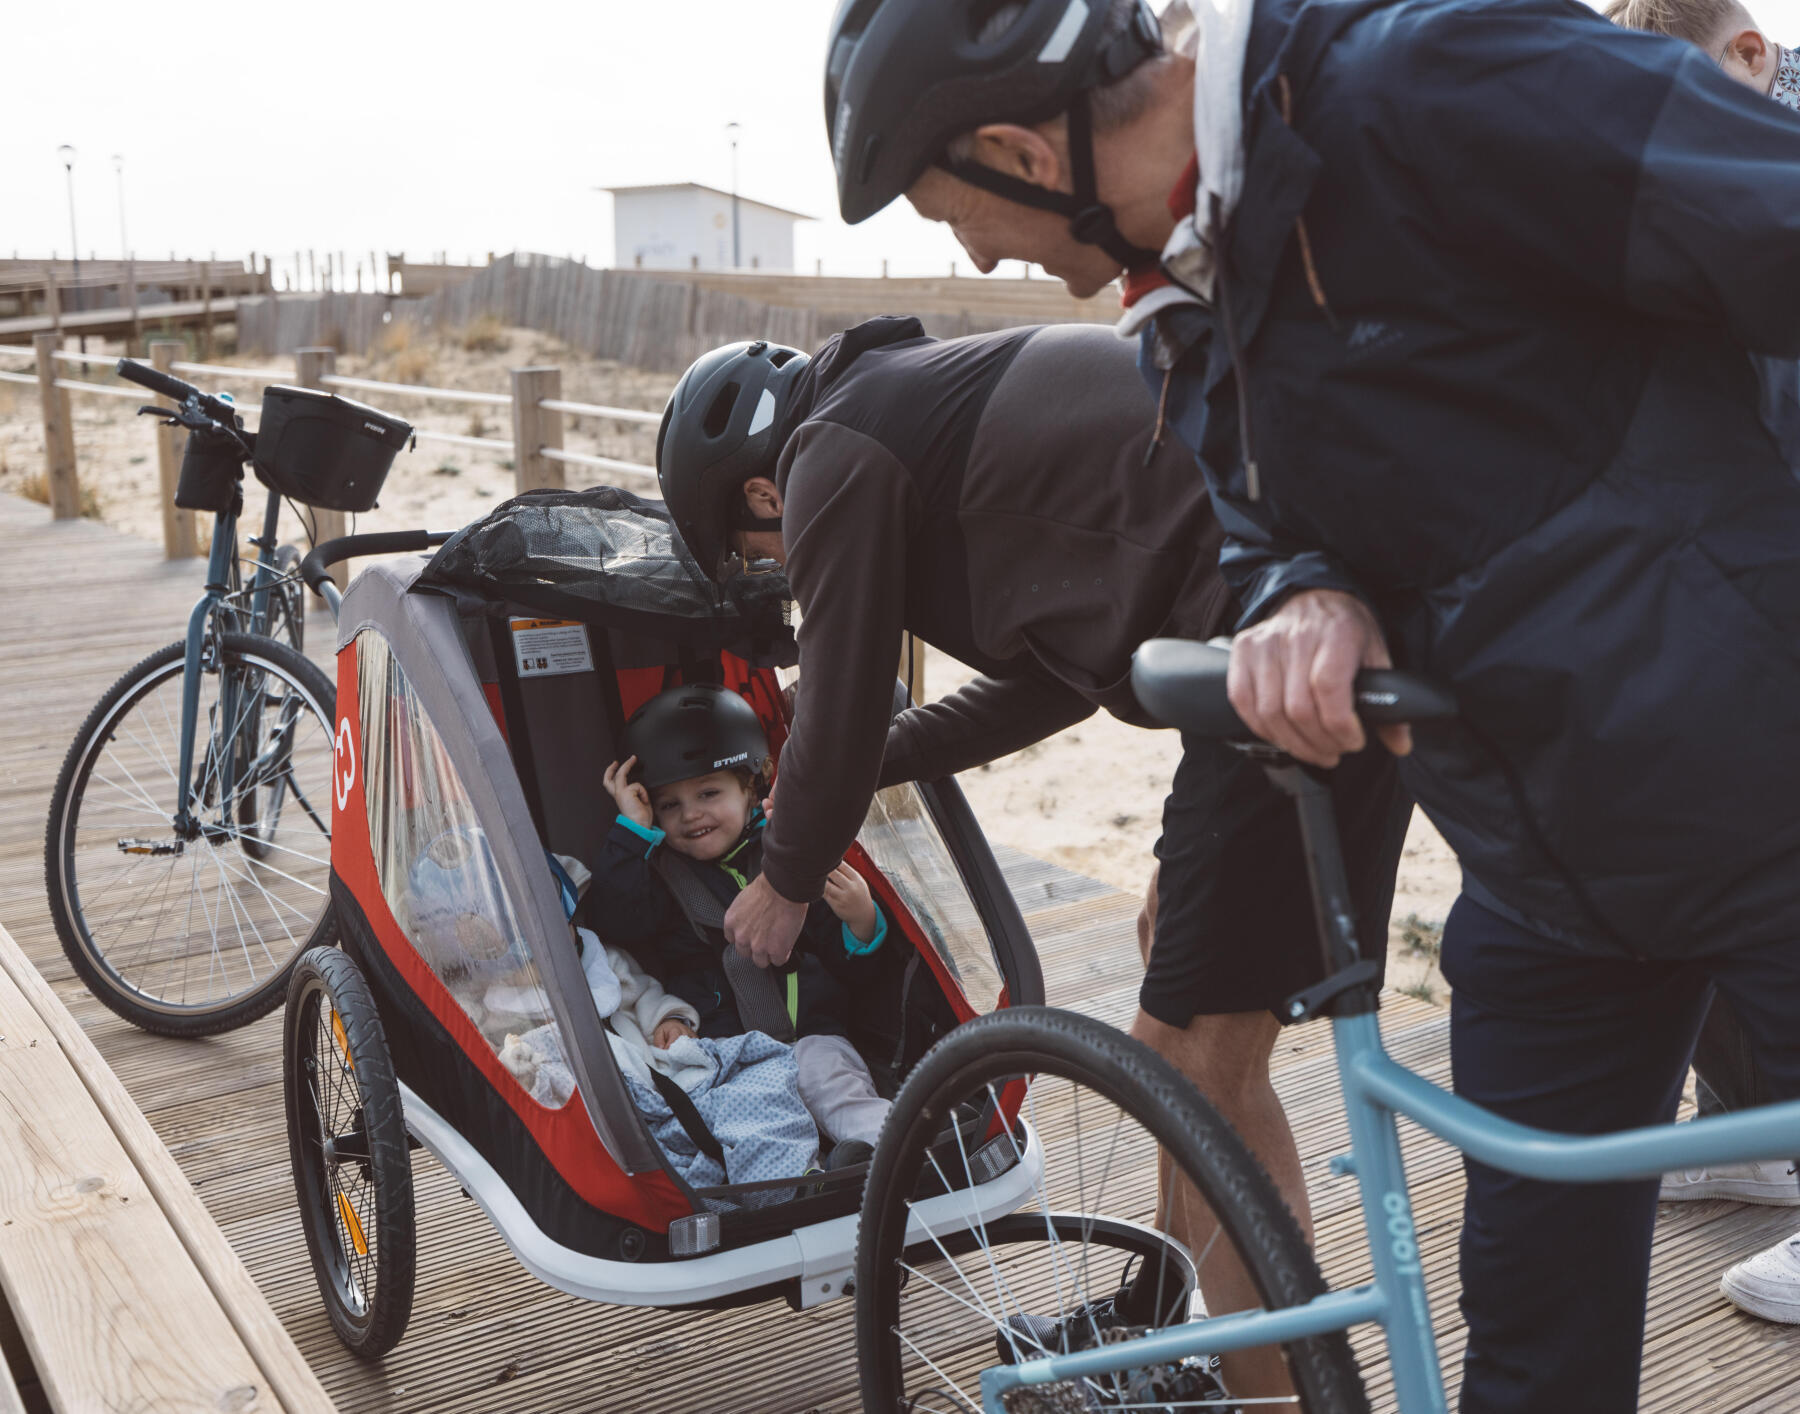 Transporter un enfant à vélo : remorque ou siège ?